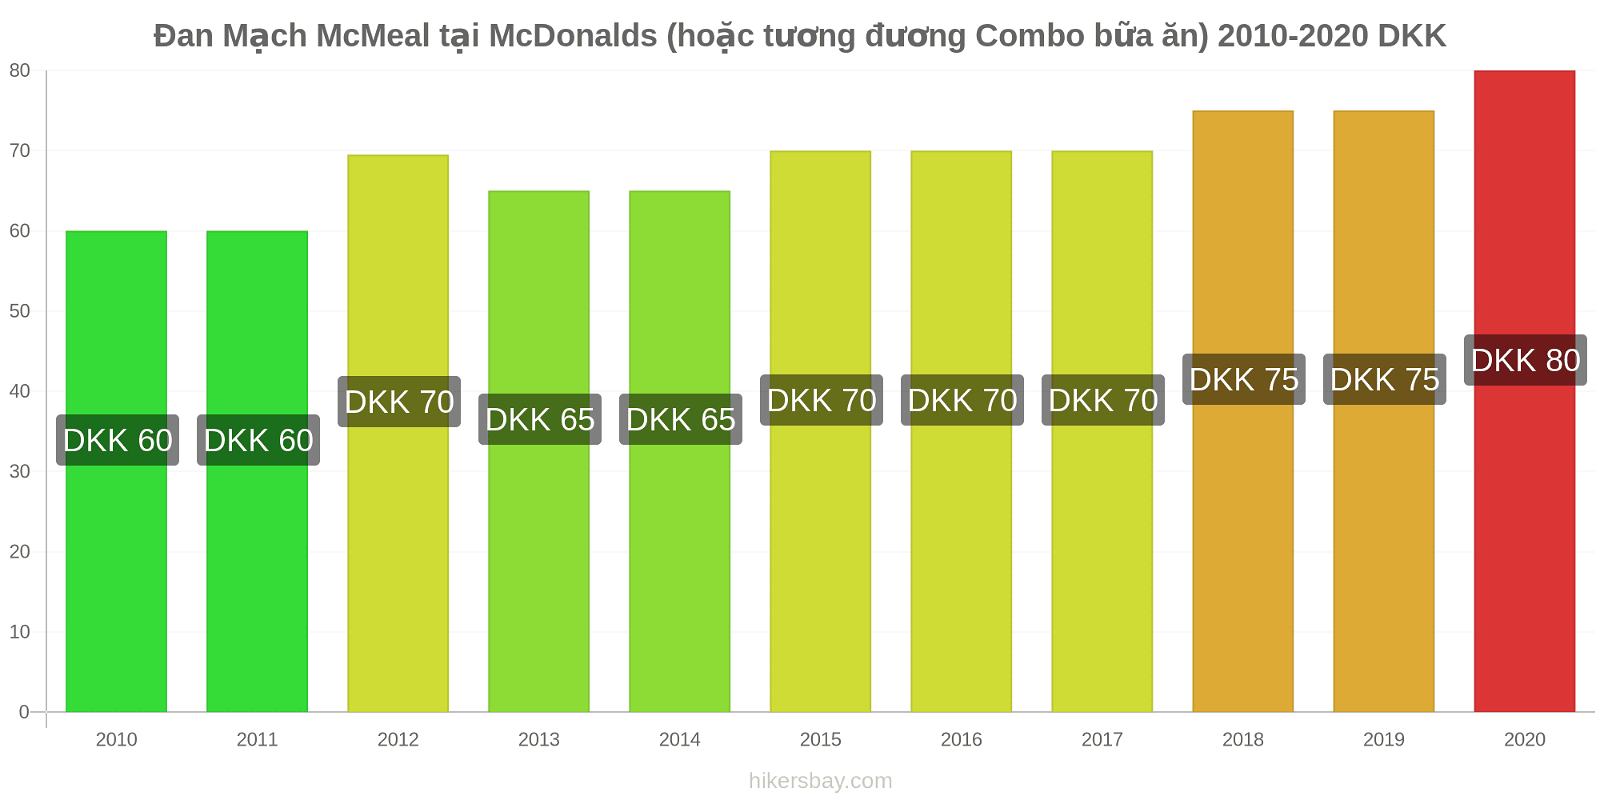 Đan Mạch thay đổi giá McMeal tại McDonalds (hoặc tương đương Combo bữa ăn) hikersbay.com